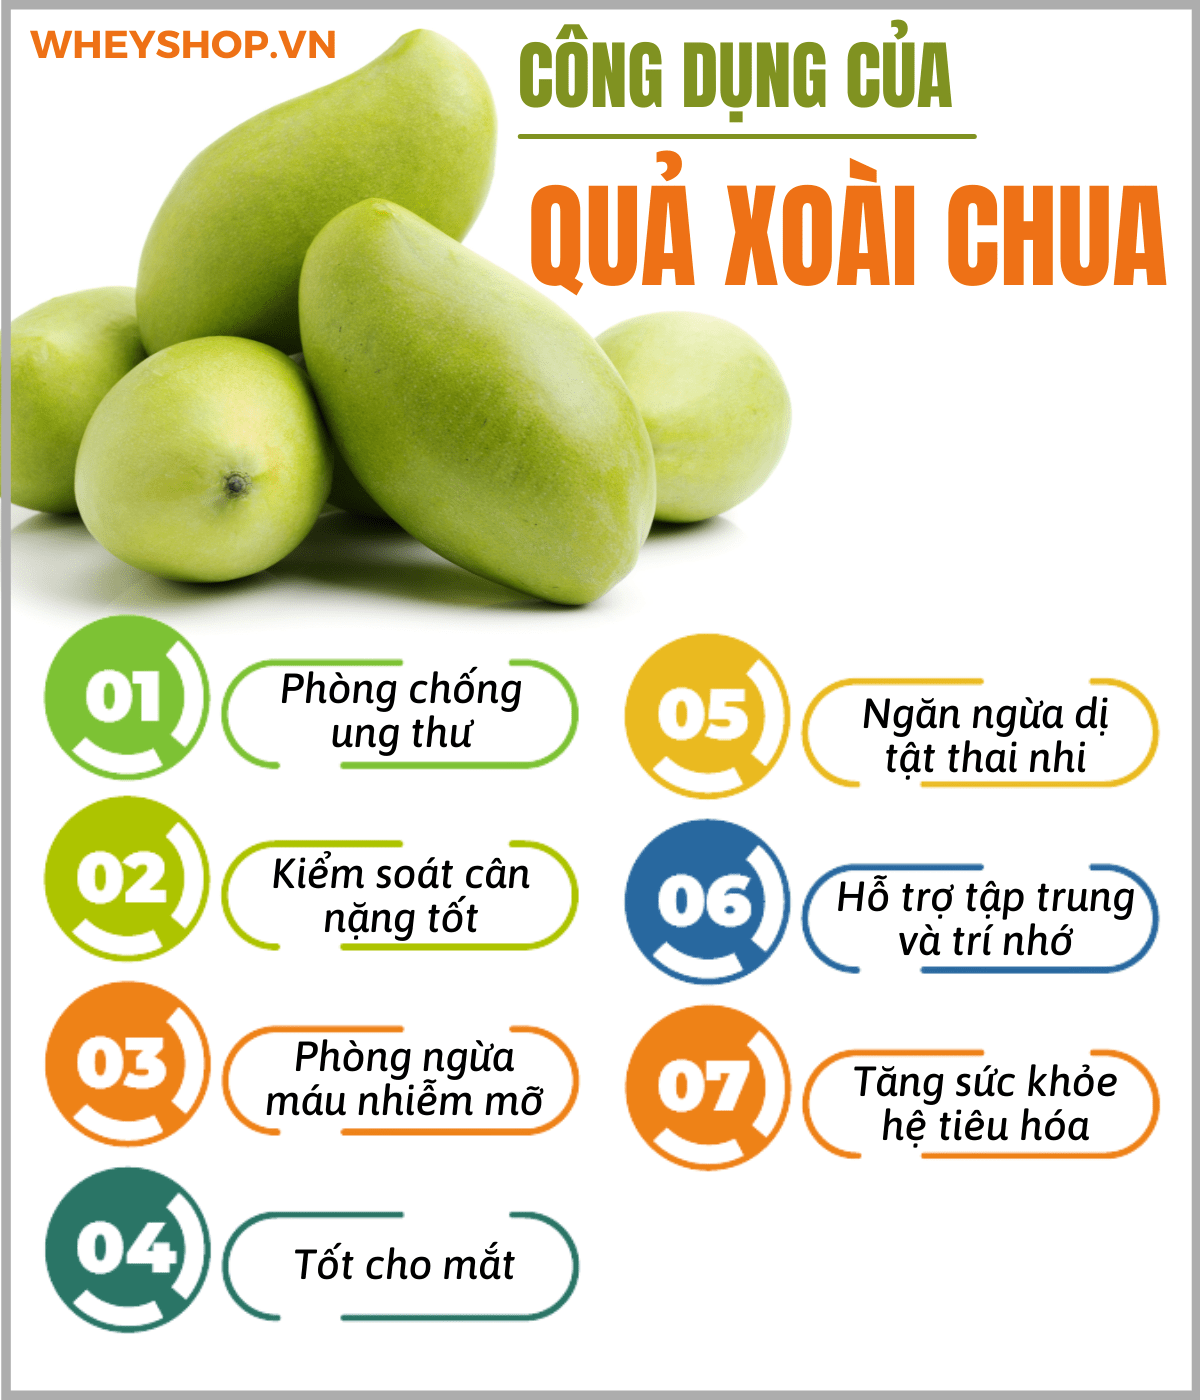 Xoài chua là một loại trái cây phổ biến tại Việt Nam, xoài là một loại trái cây được nhiều người biết đến với nhiều loại khác nhau. Khi còn xanh, x oài chua...